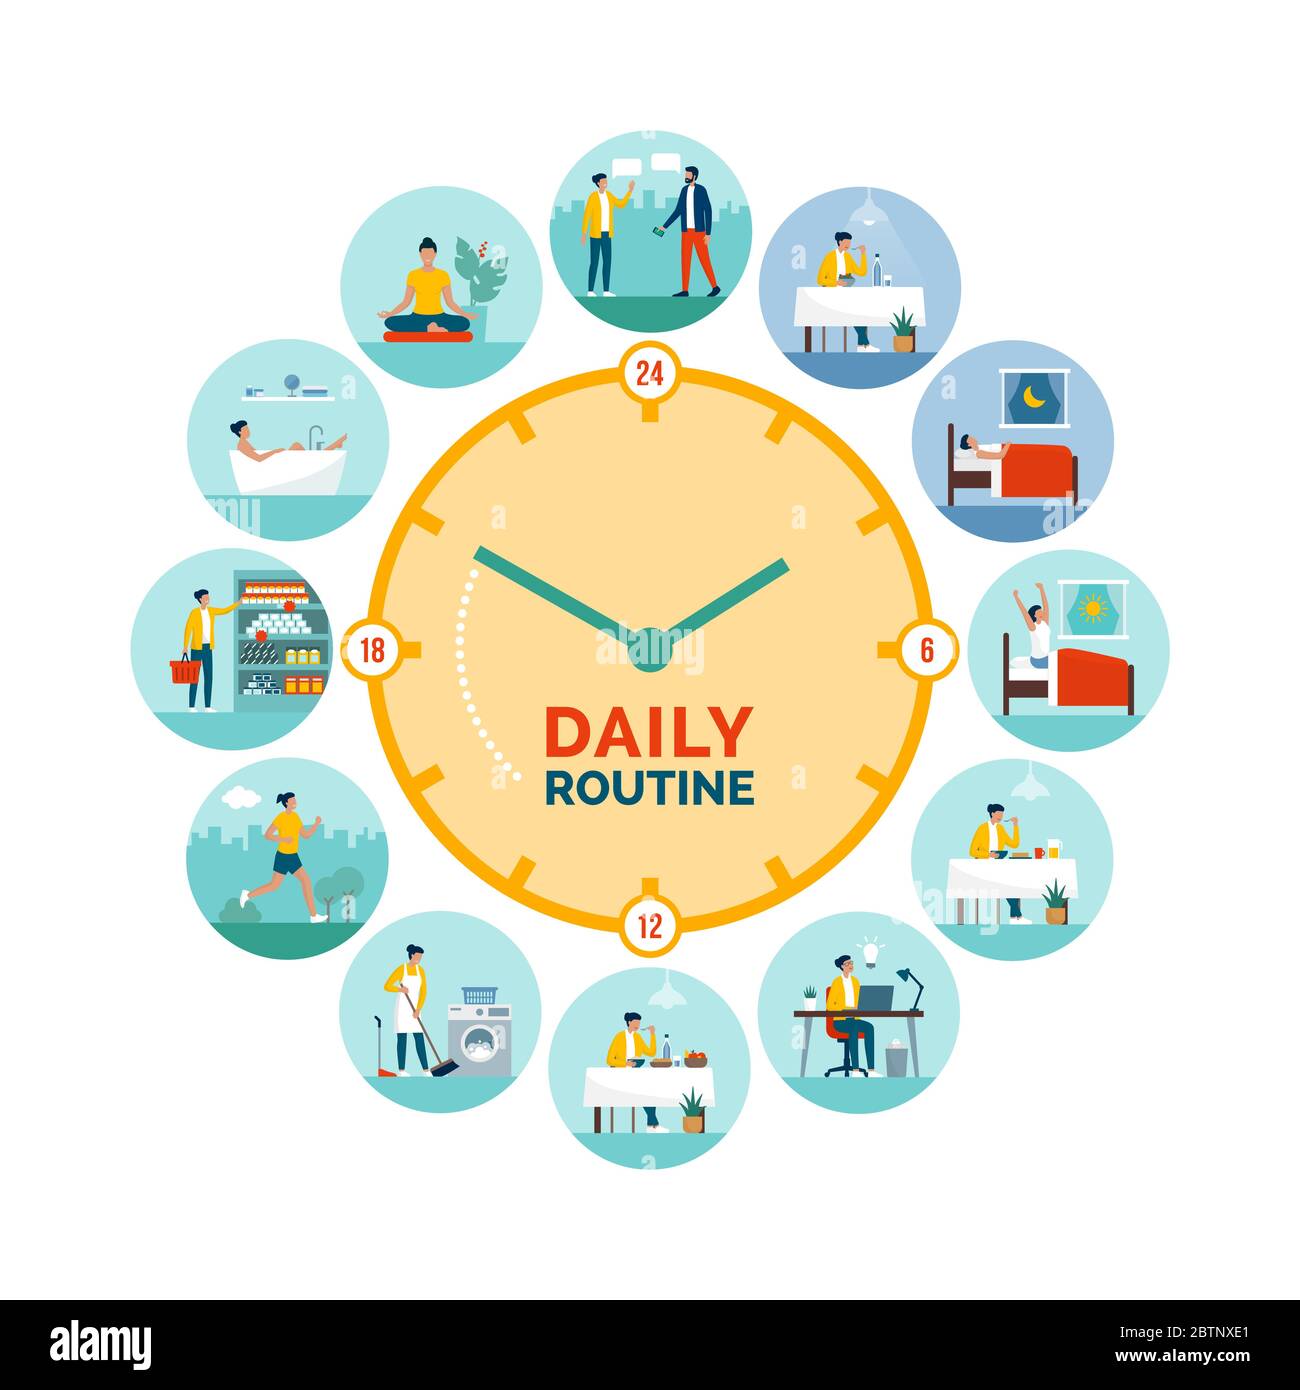 Uhr mit täglichen Aktivitäten Routine: Frau verschiedene Aufgaben während Tag und Nacht, gesunde Lebensweise und biologische Rhythmen Konzept Stock Vektor